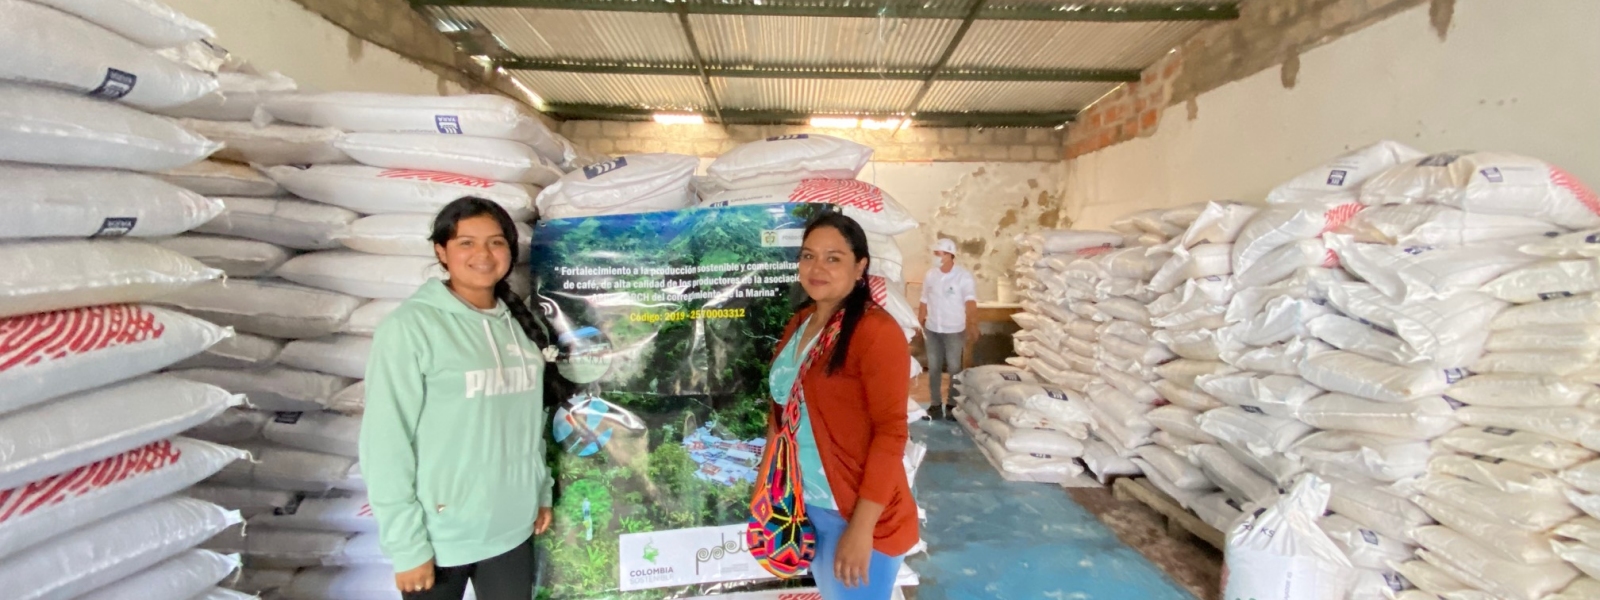 Proyecto Fortalecimiento a la producción sostenible y comercialización de café de alta calidad de los productores de la Asociación APROMARCH del corregimiento de La Marina, Chaparral, Tolima